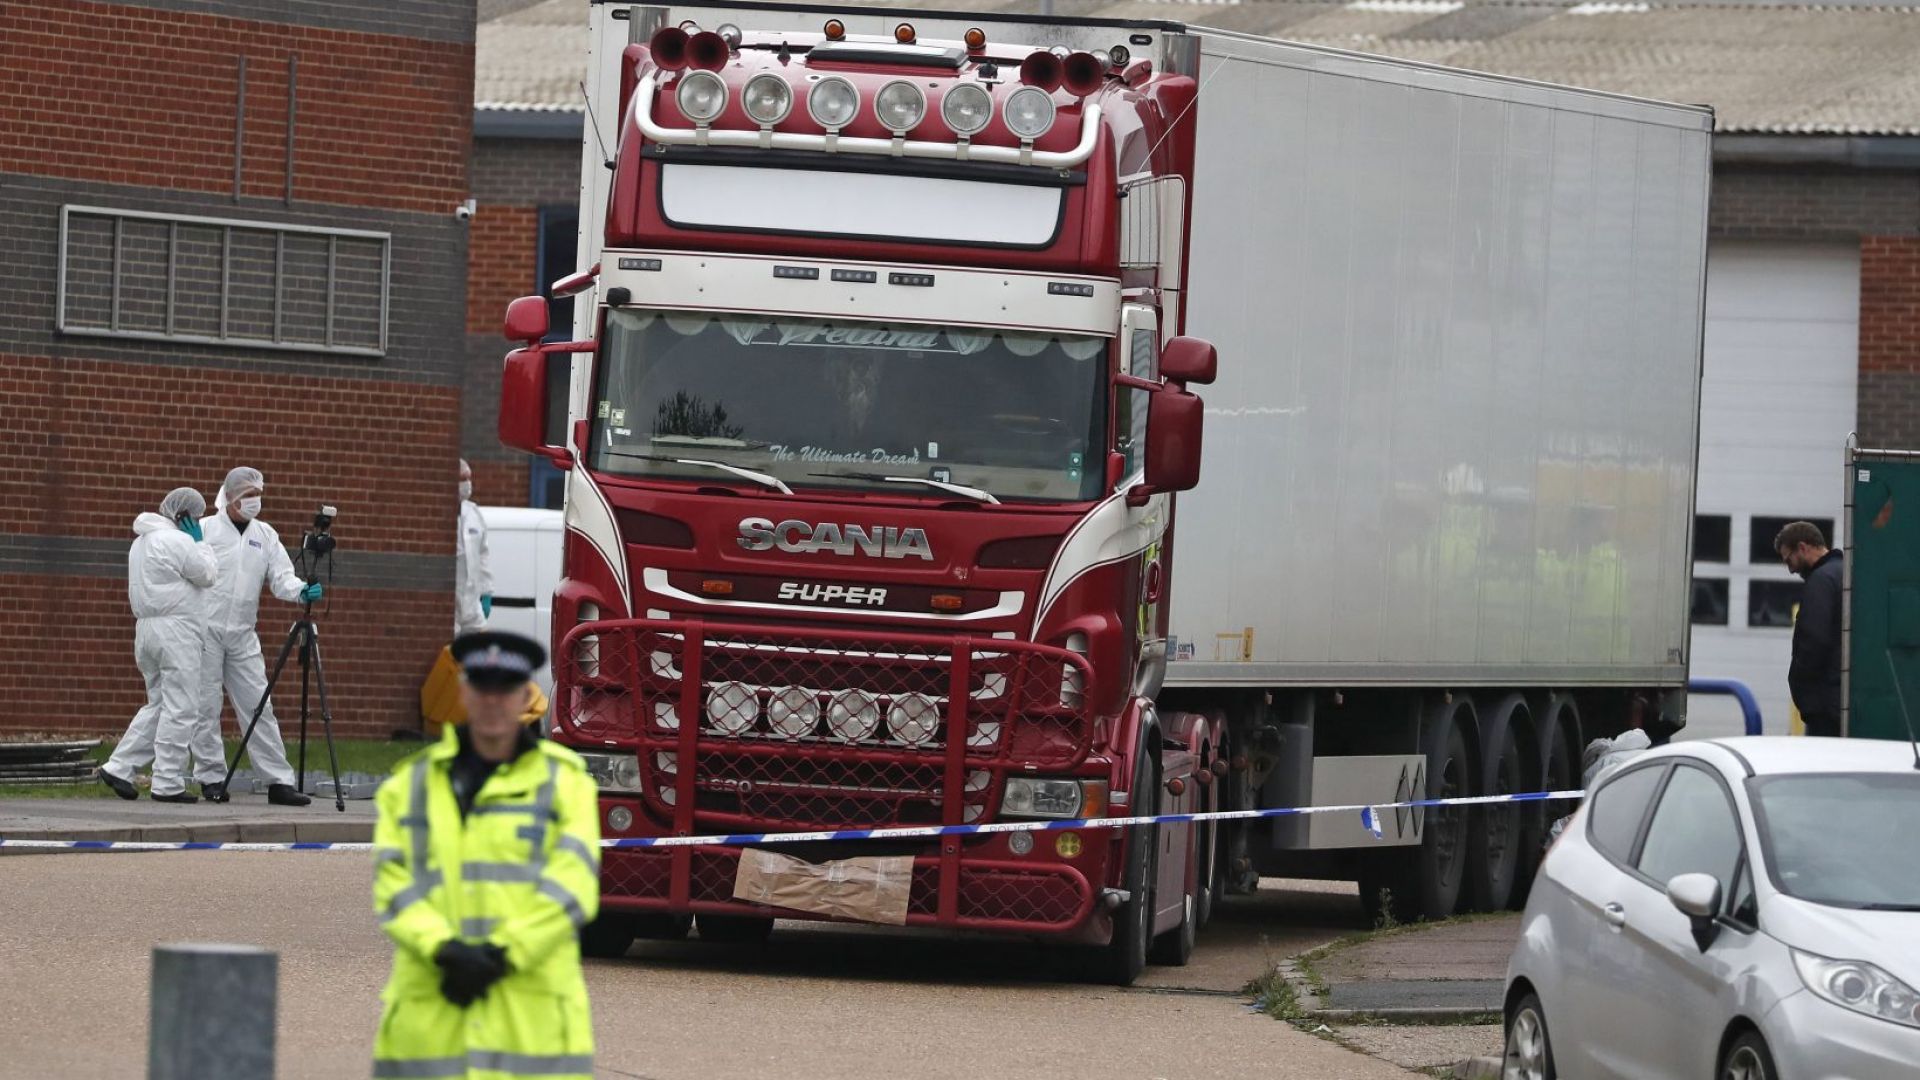 Британската полиция започна работа по идентифицирането на 39 те жертви намерени